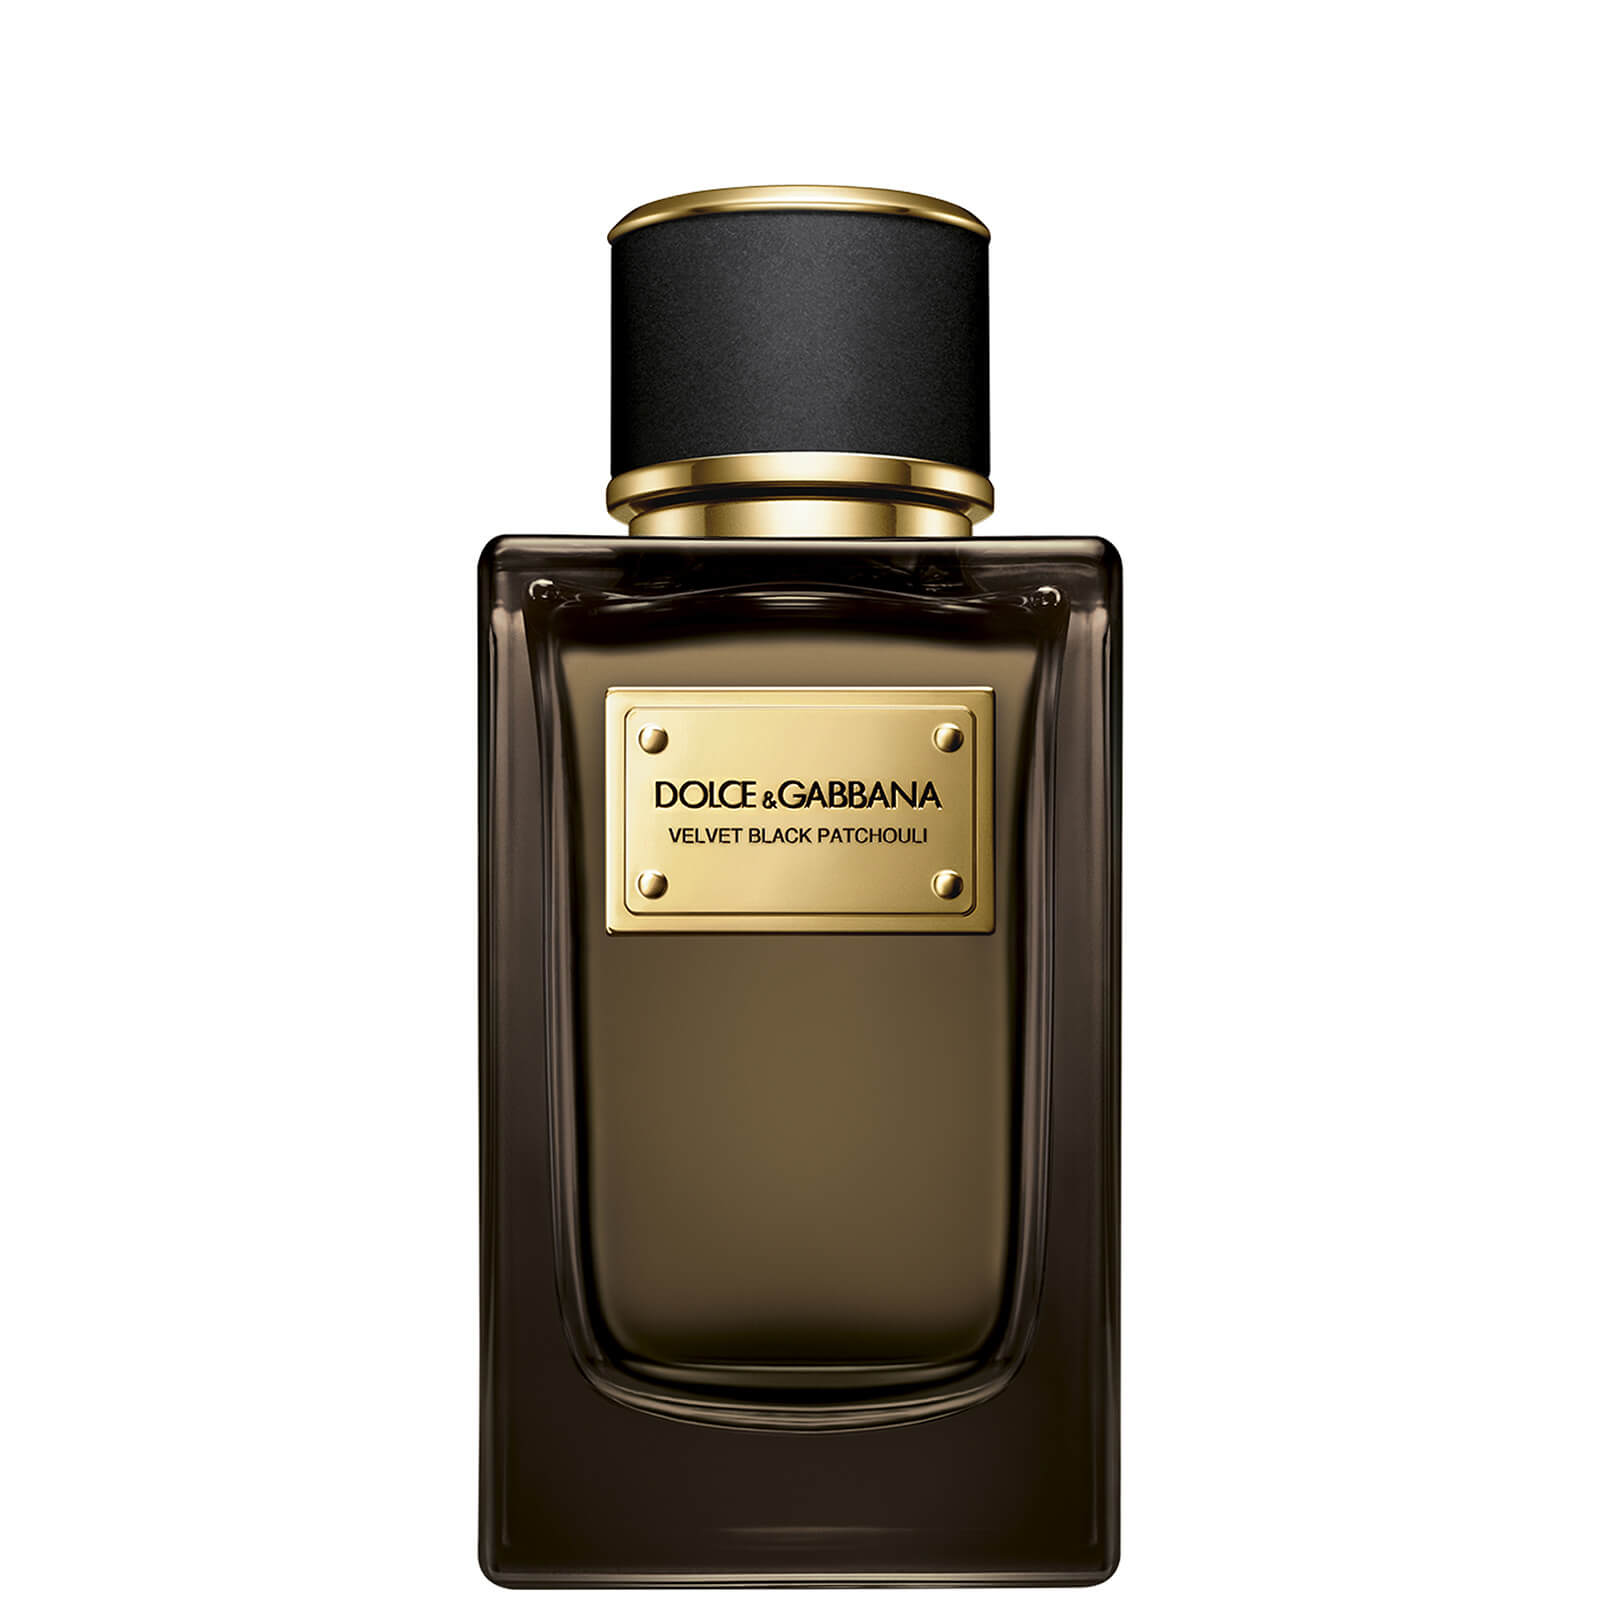 Dolce&Gabbana Velvet Black Patchouli Eau de Parfum (Various Sizes) - 150ml